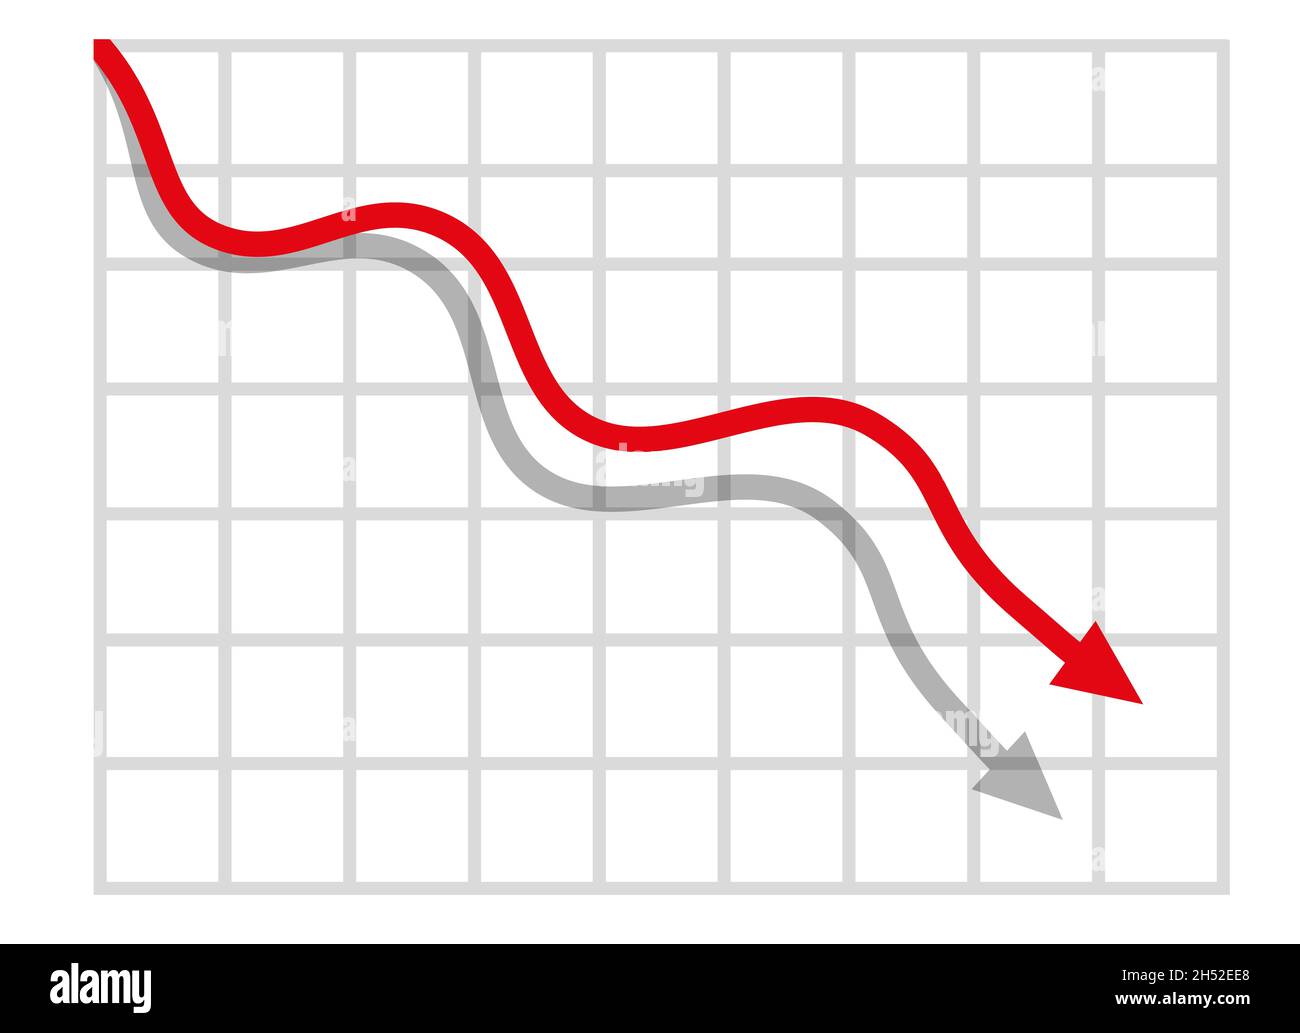 Grafico con rapporto di riduzione. Diagramma con la recessione e il progresso di fallimento. Illustrazione del vettore commerciale e finanziario Foto Stock